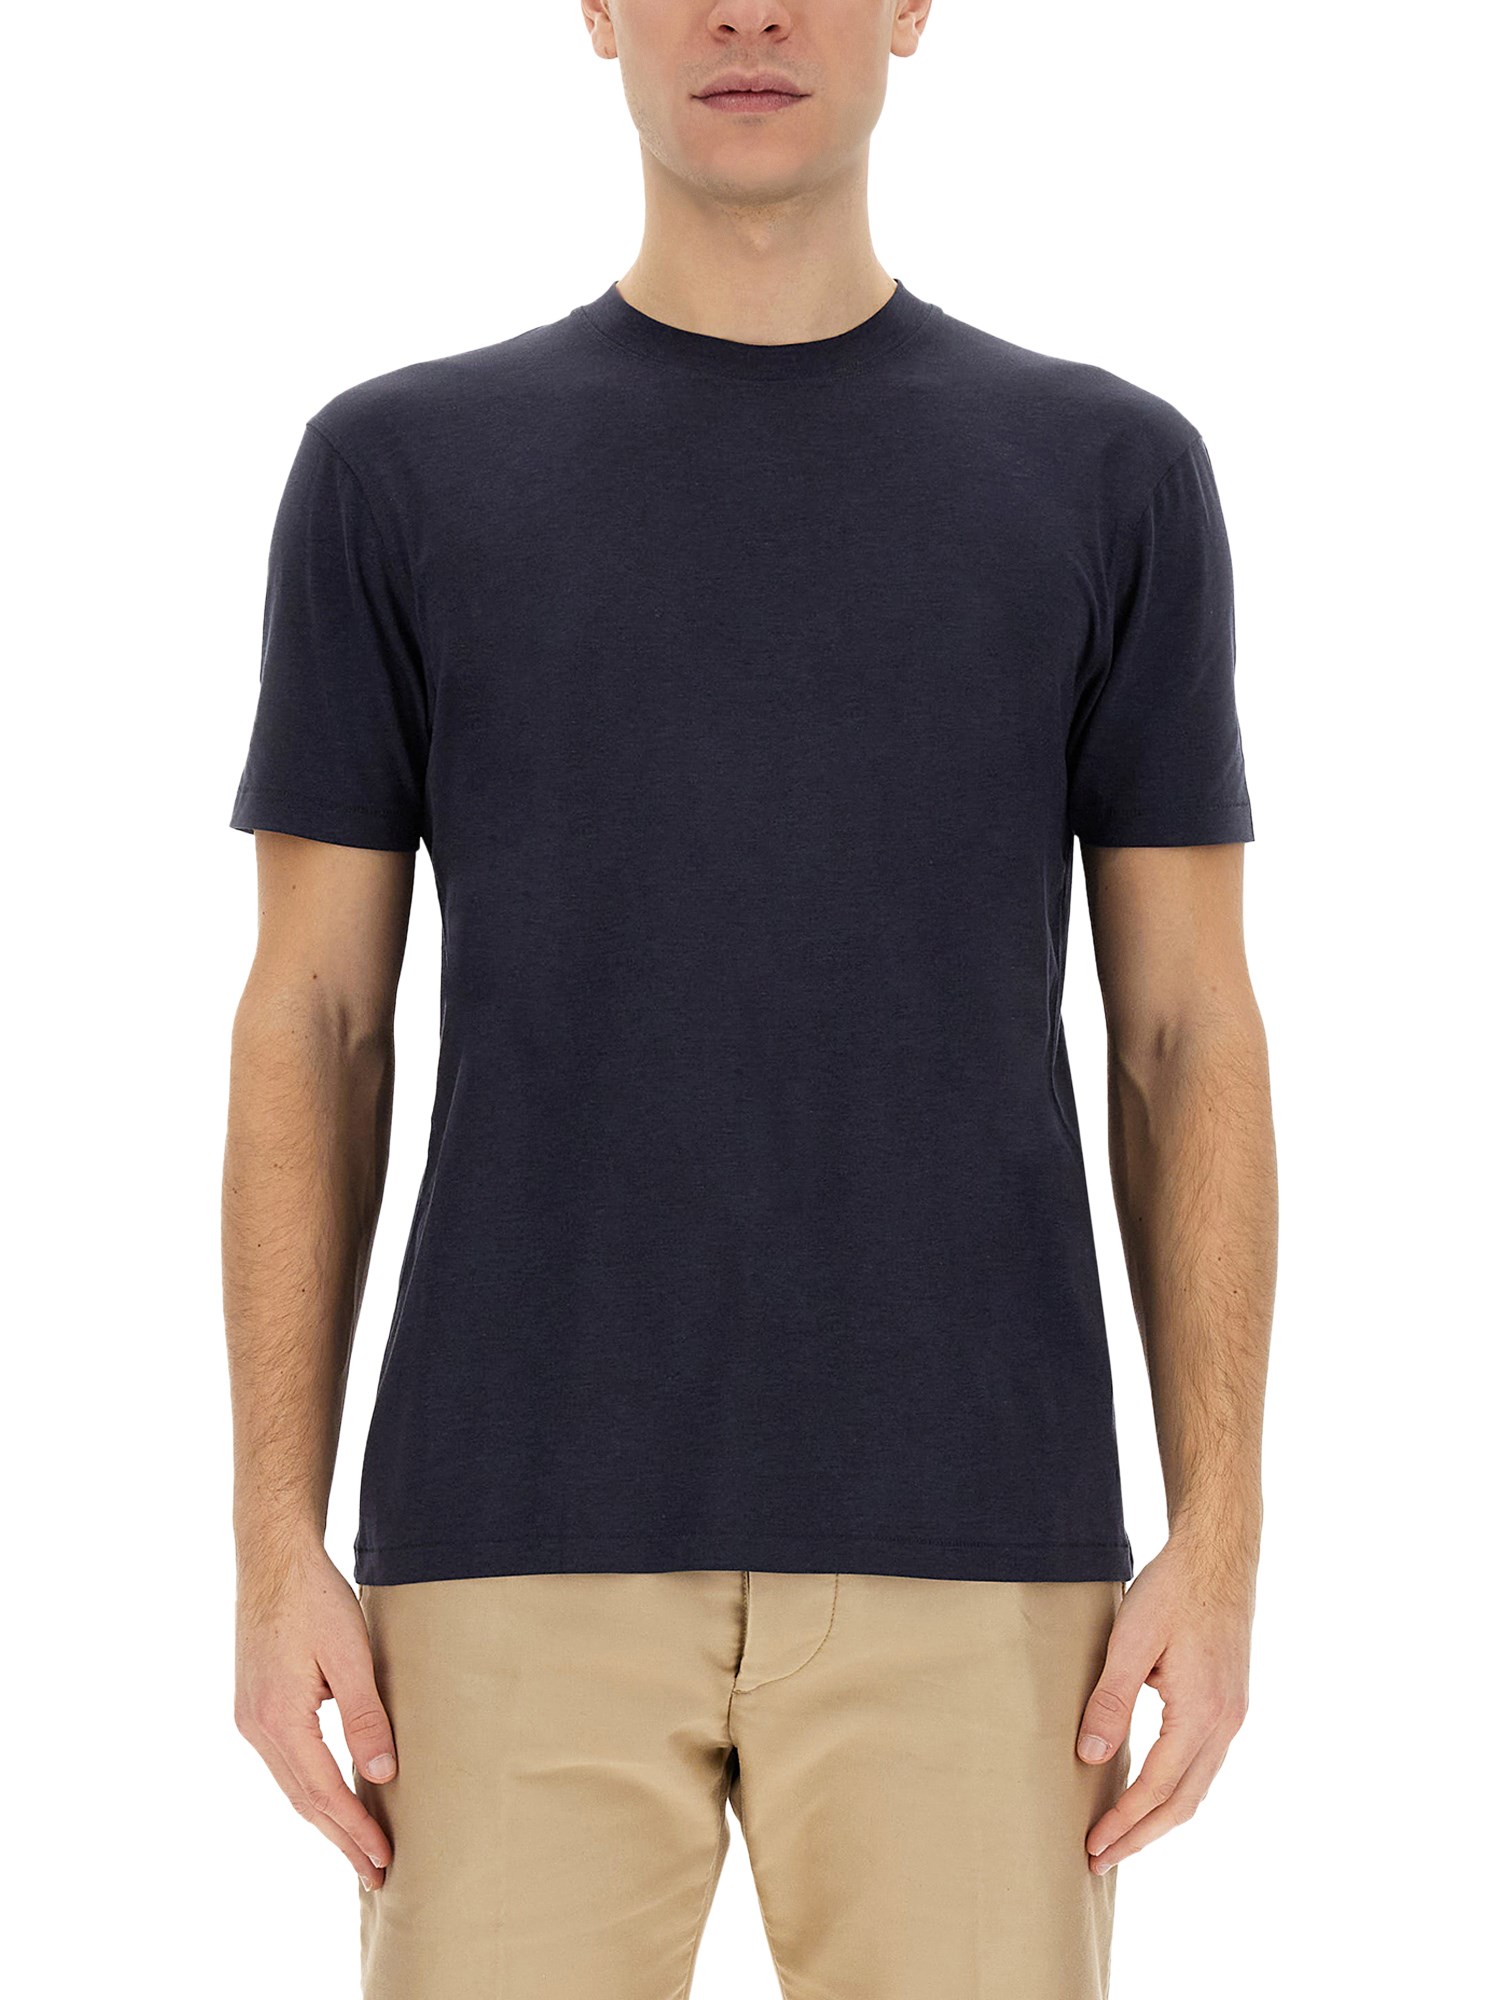 tom ford basic t-shirt